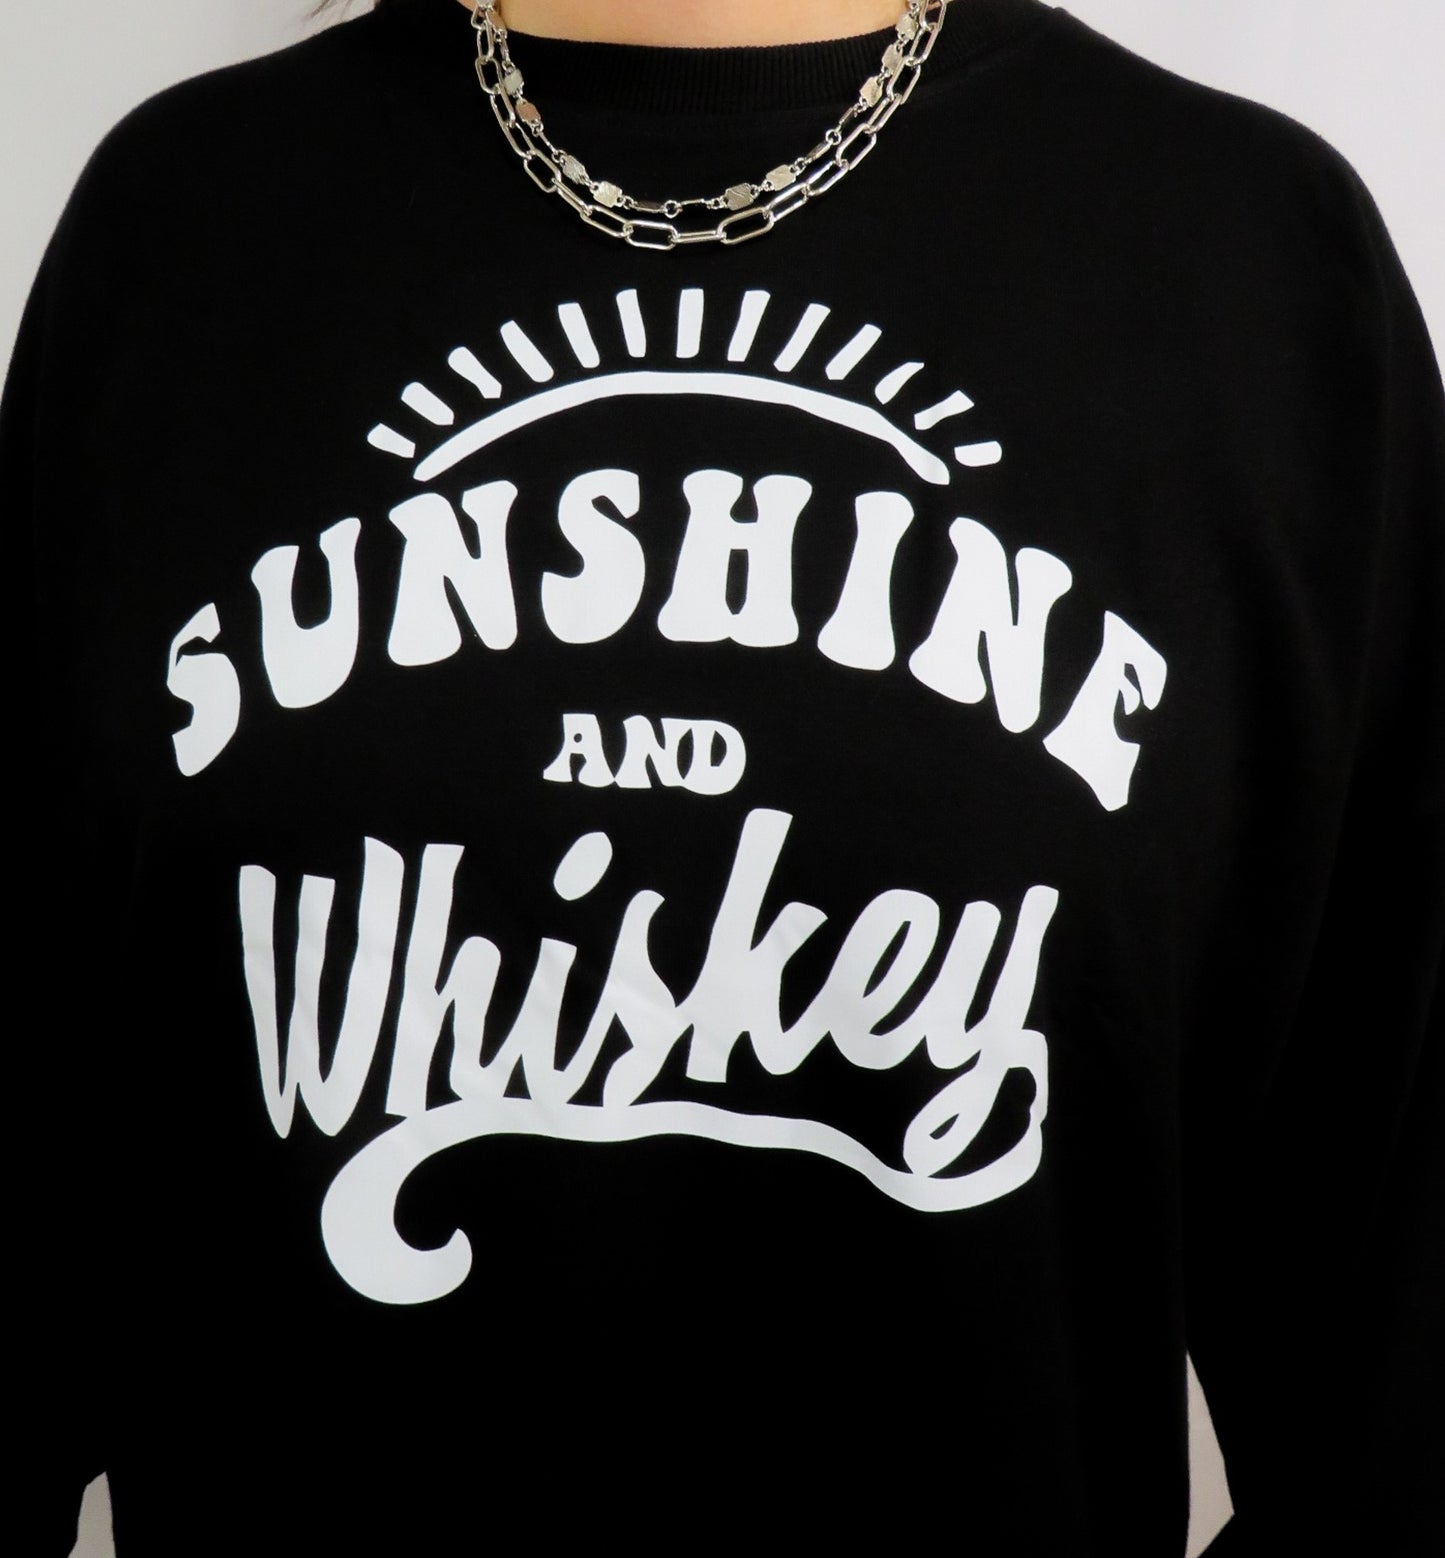 Sunshine and Whiskey Oversized Sweatshirt